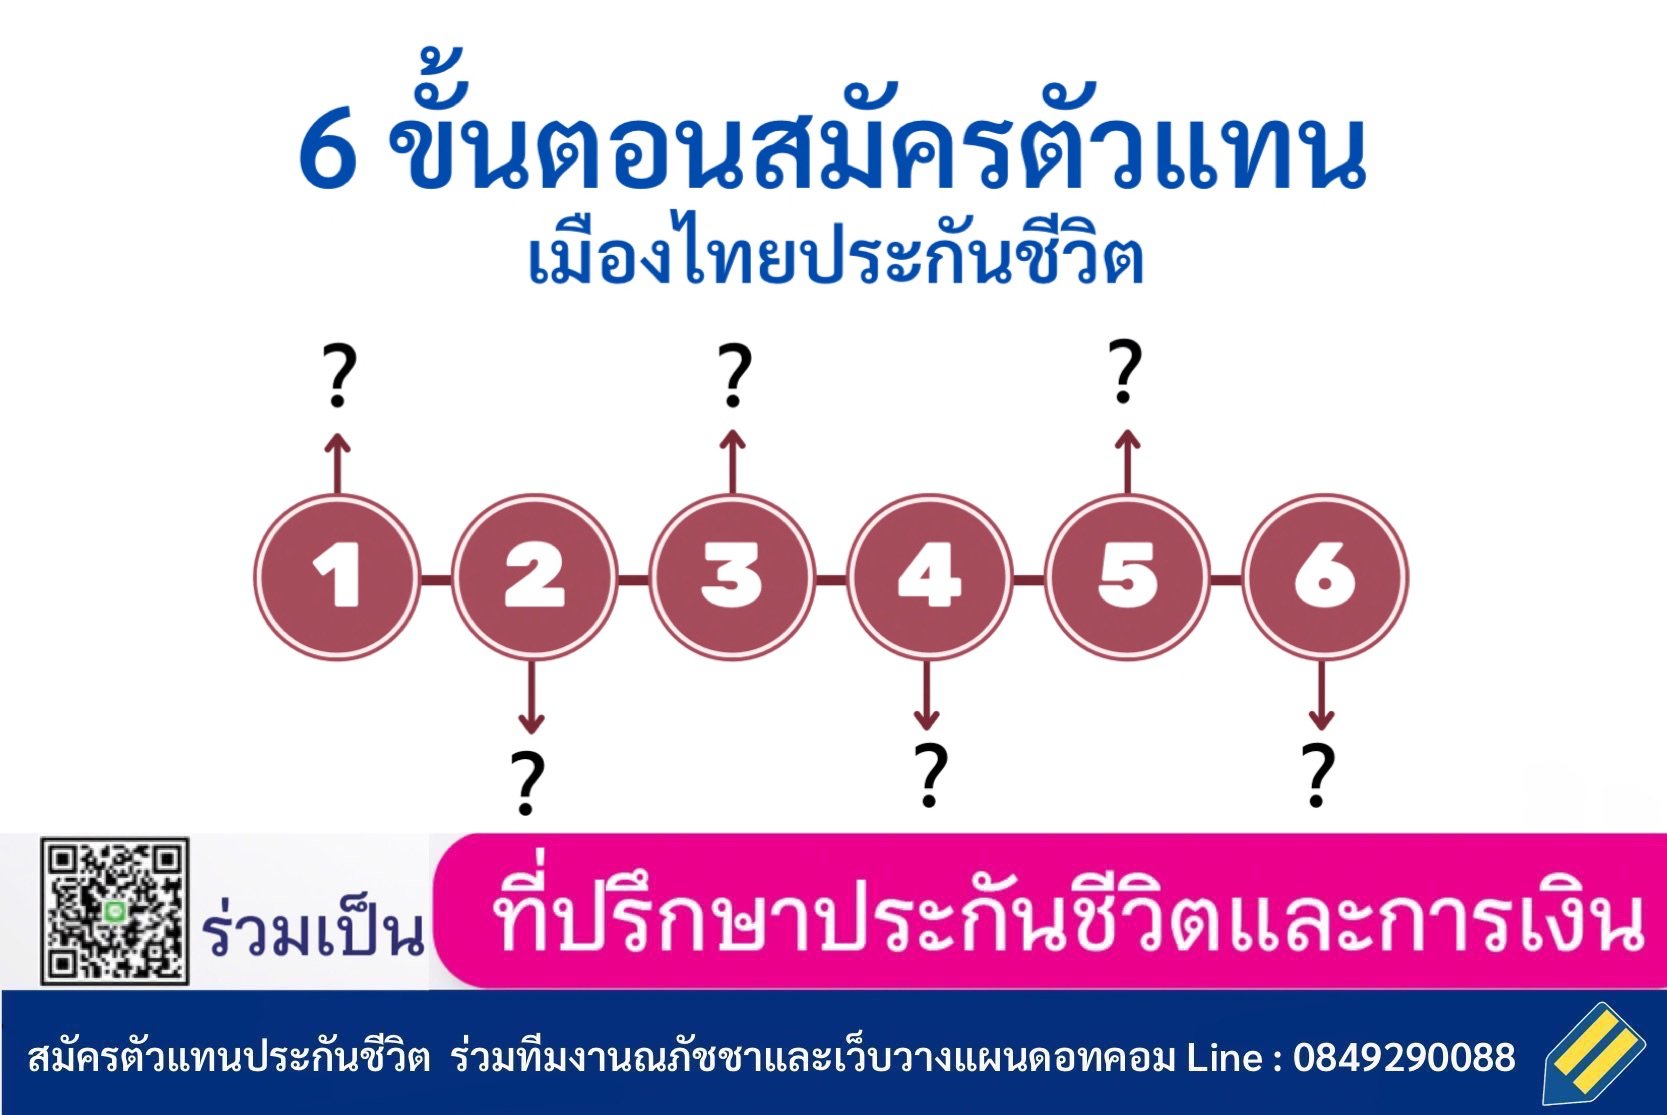 6 ขั้นตอน สมัครตัวแทนเมืองไทยประกันชีวิต ร่วมเป็นนักวางแผนการเงินกับทีมวางแผนดอทคอม